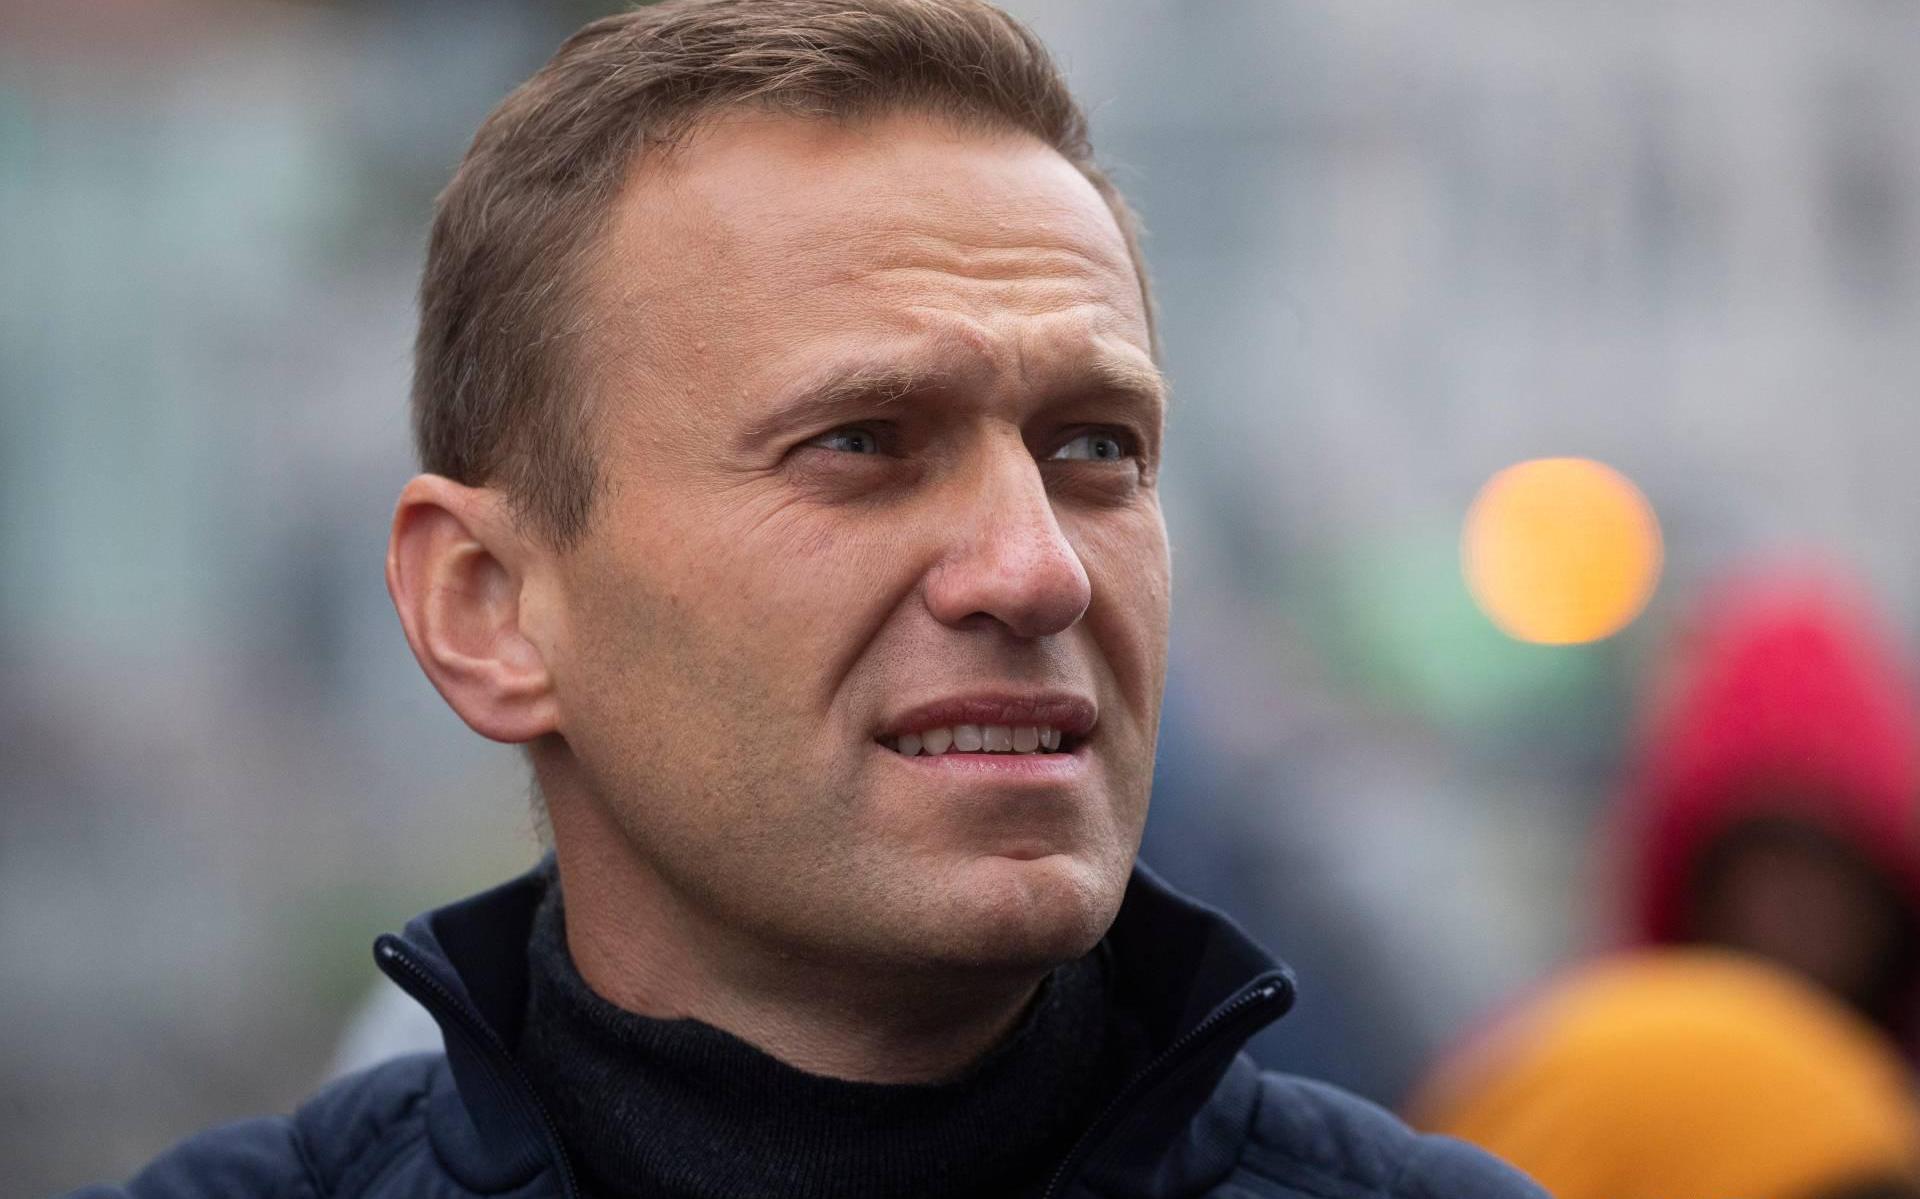 Frankrijk en Duitsland willen sancties om vergiftiging Navalni